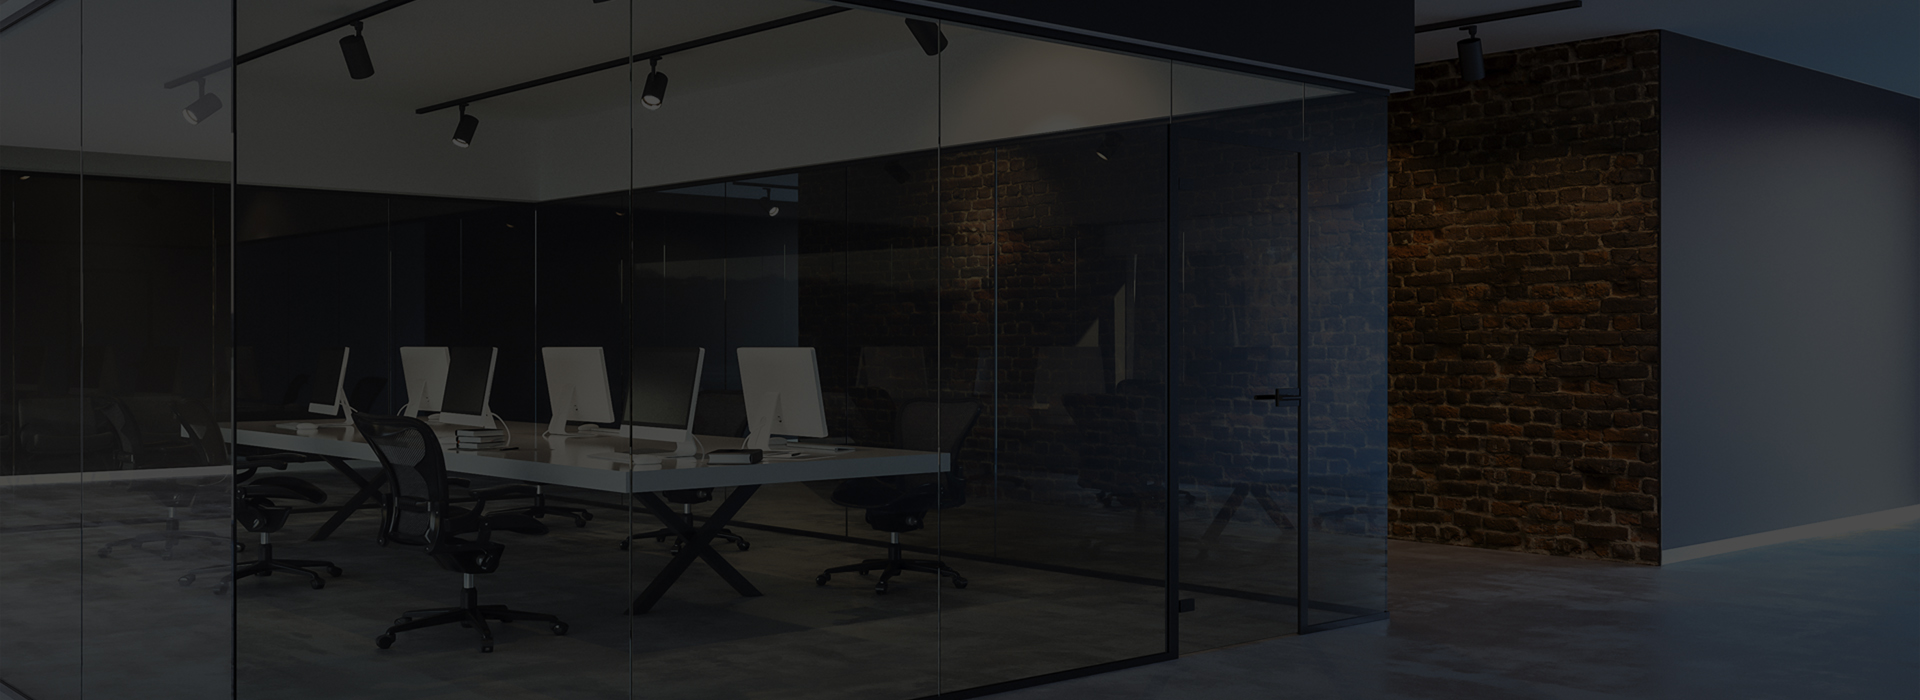 Selec - Un nuevo concepto de oficinas